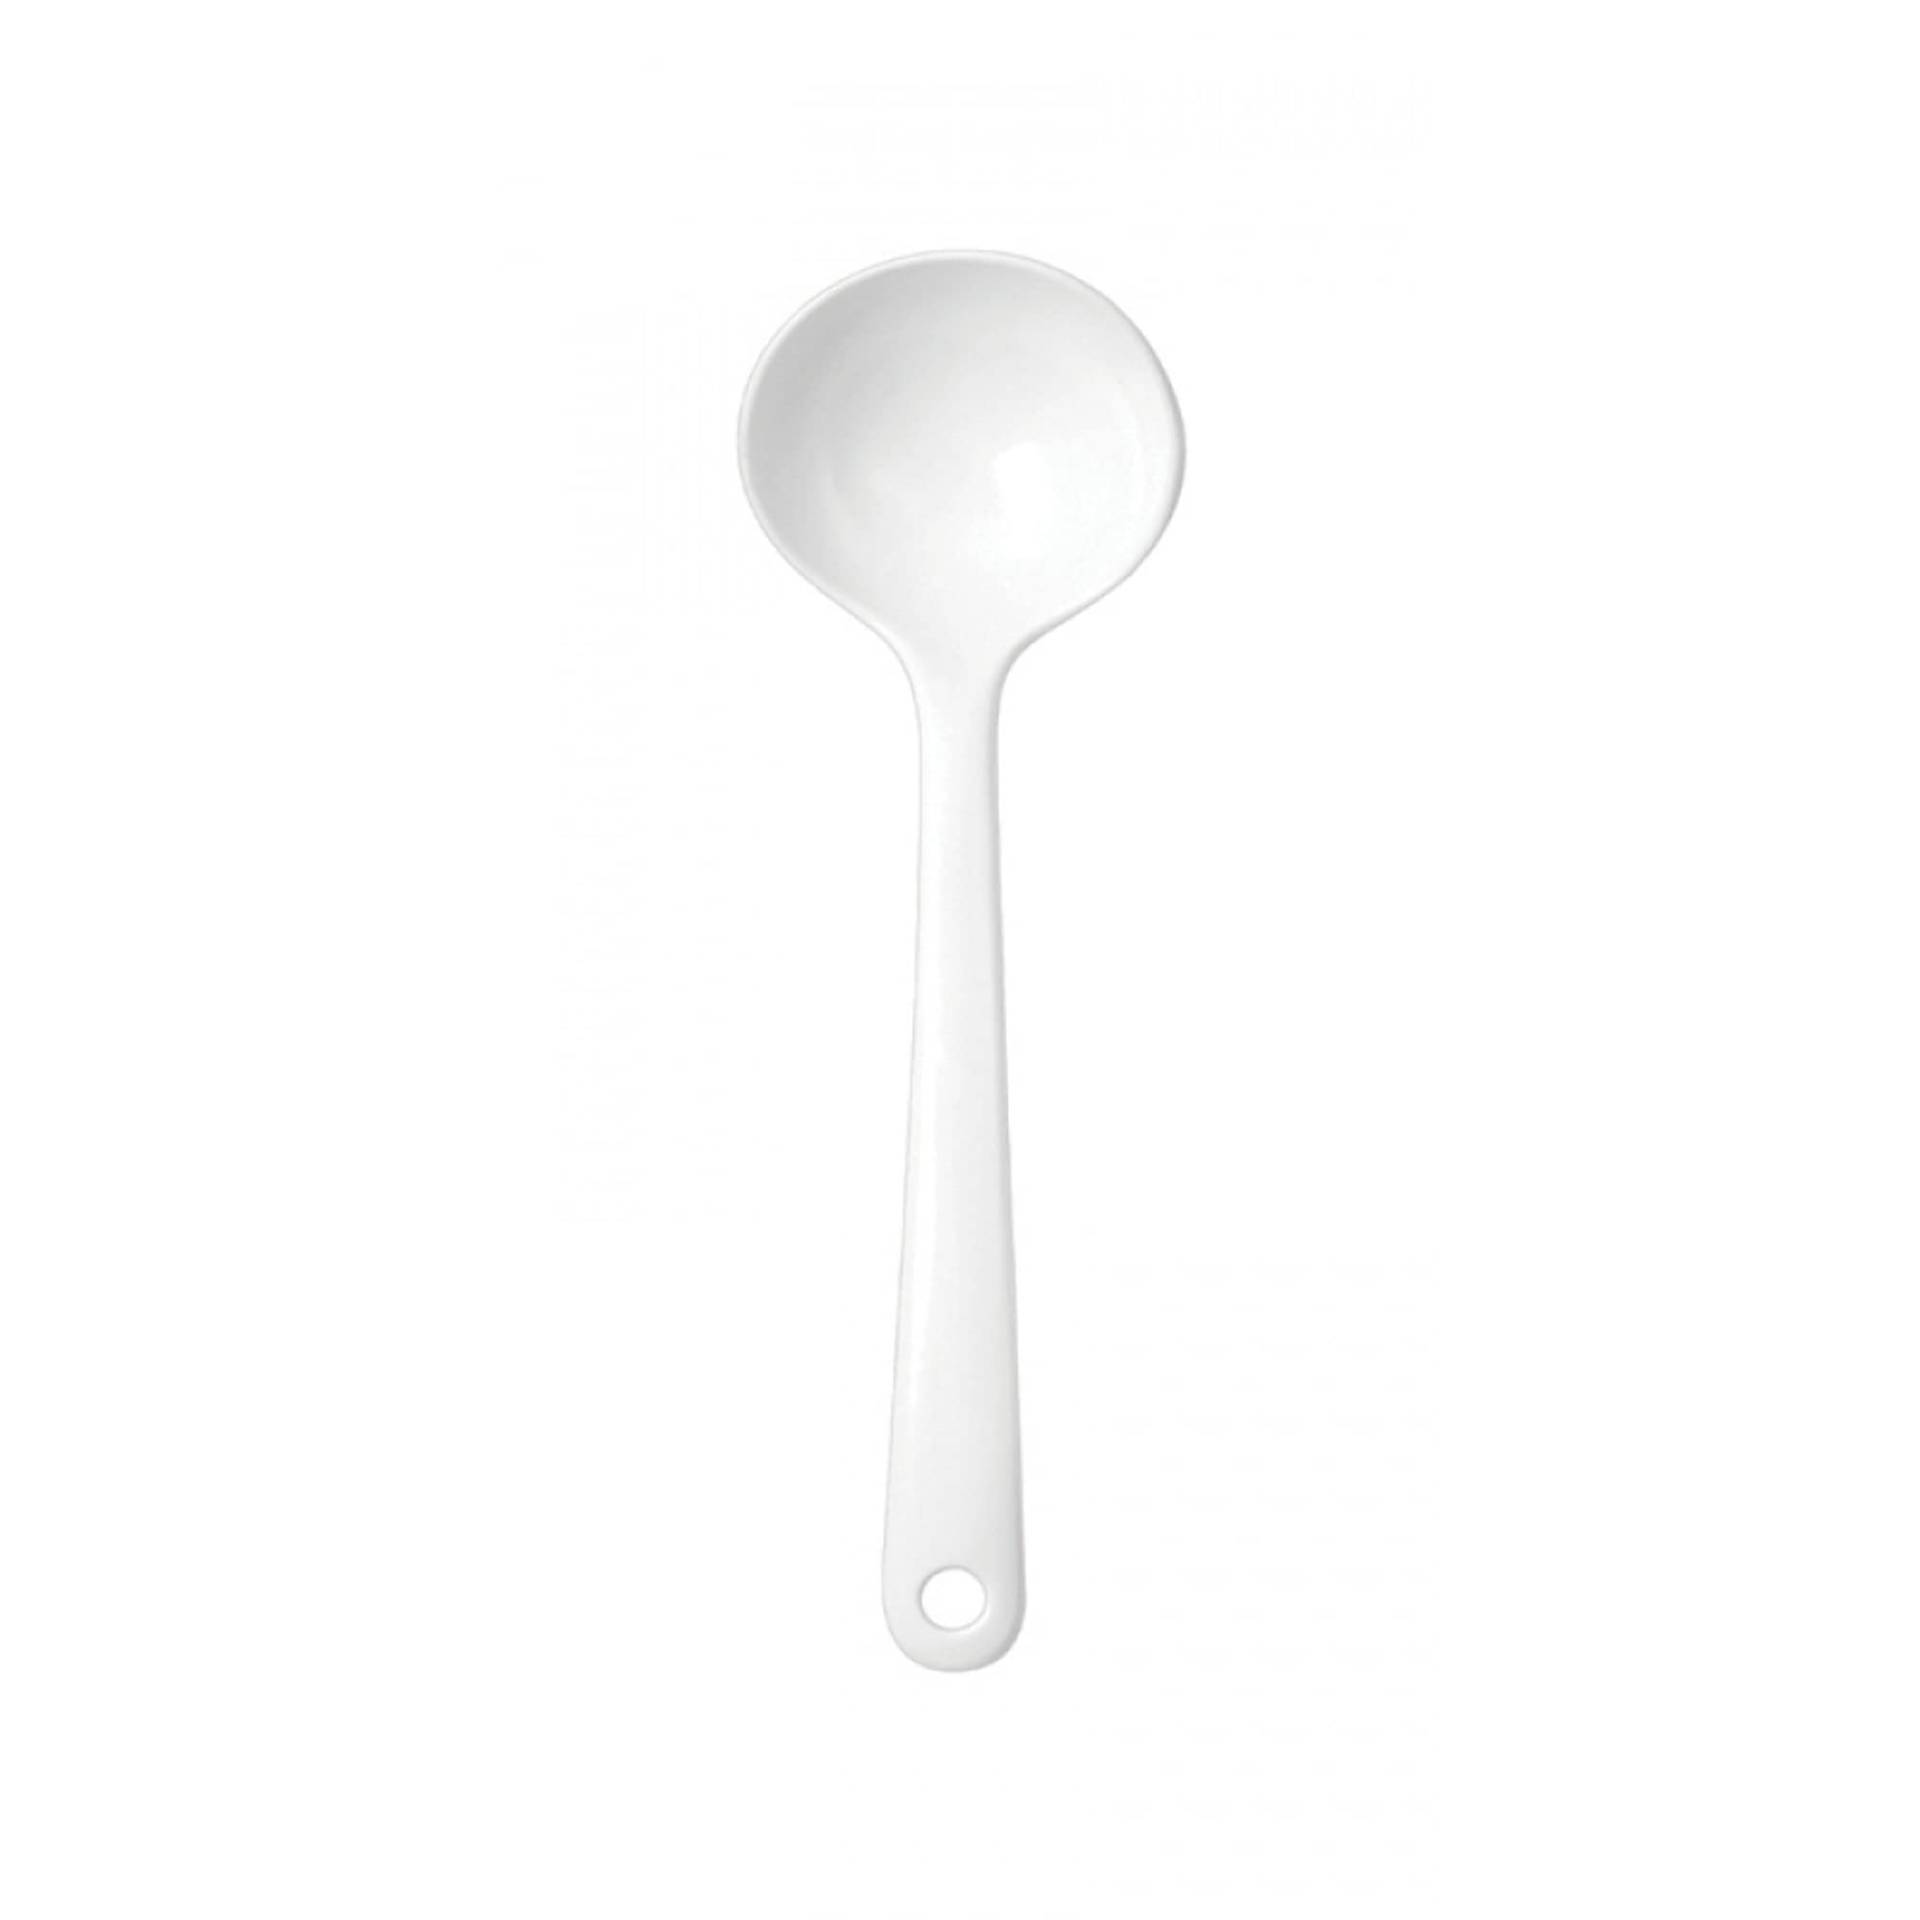 WACA 0255 Schöpfkelle Küchenhelfer Mehrwegartikel, Farbe:weiß, Größe:130 ml von WACA